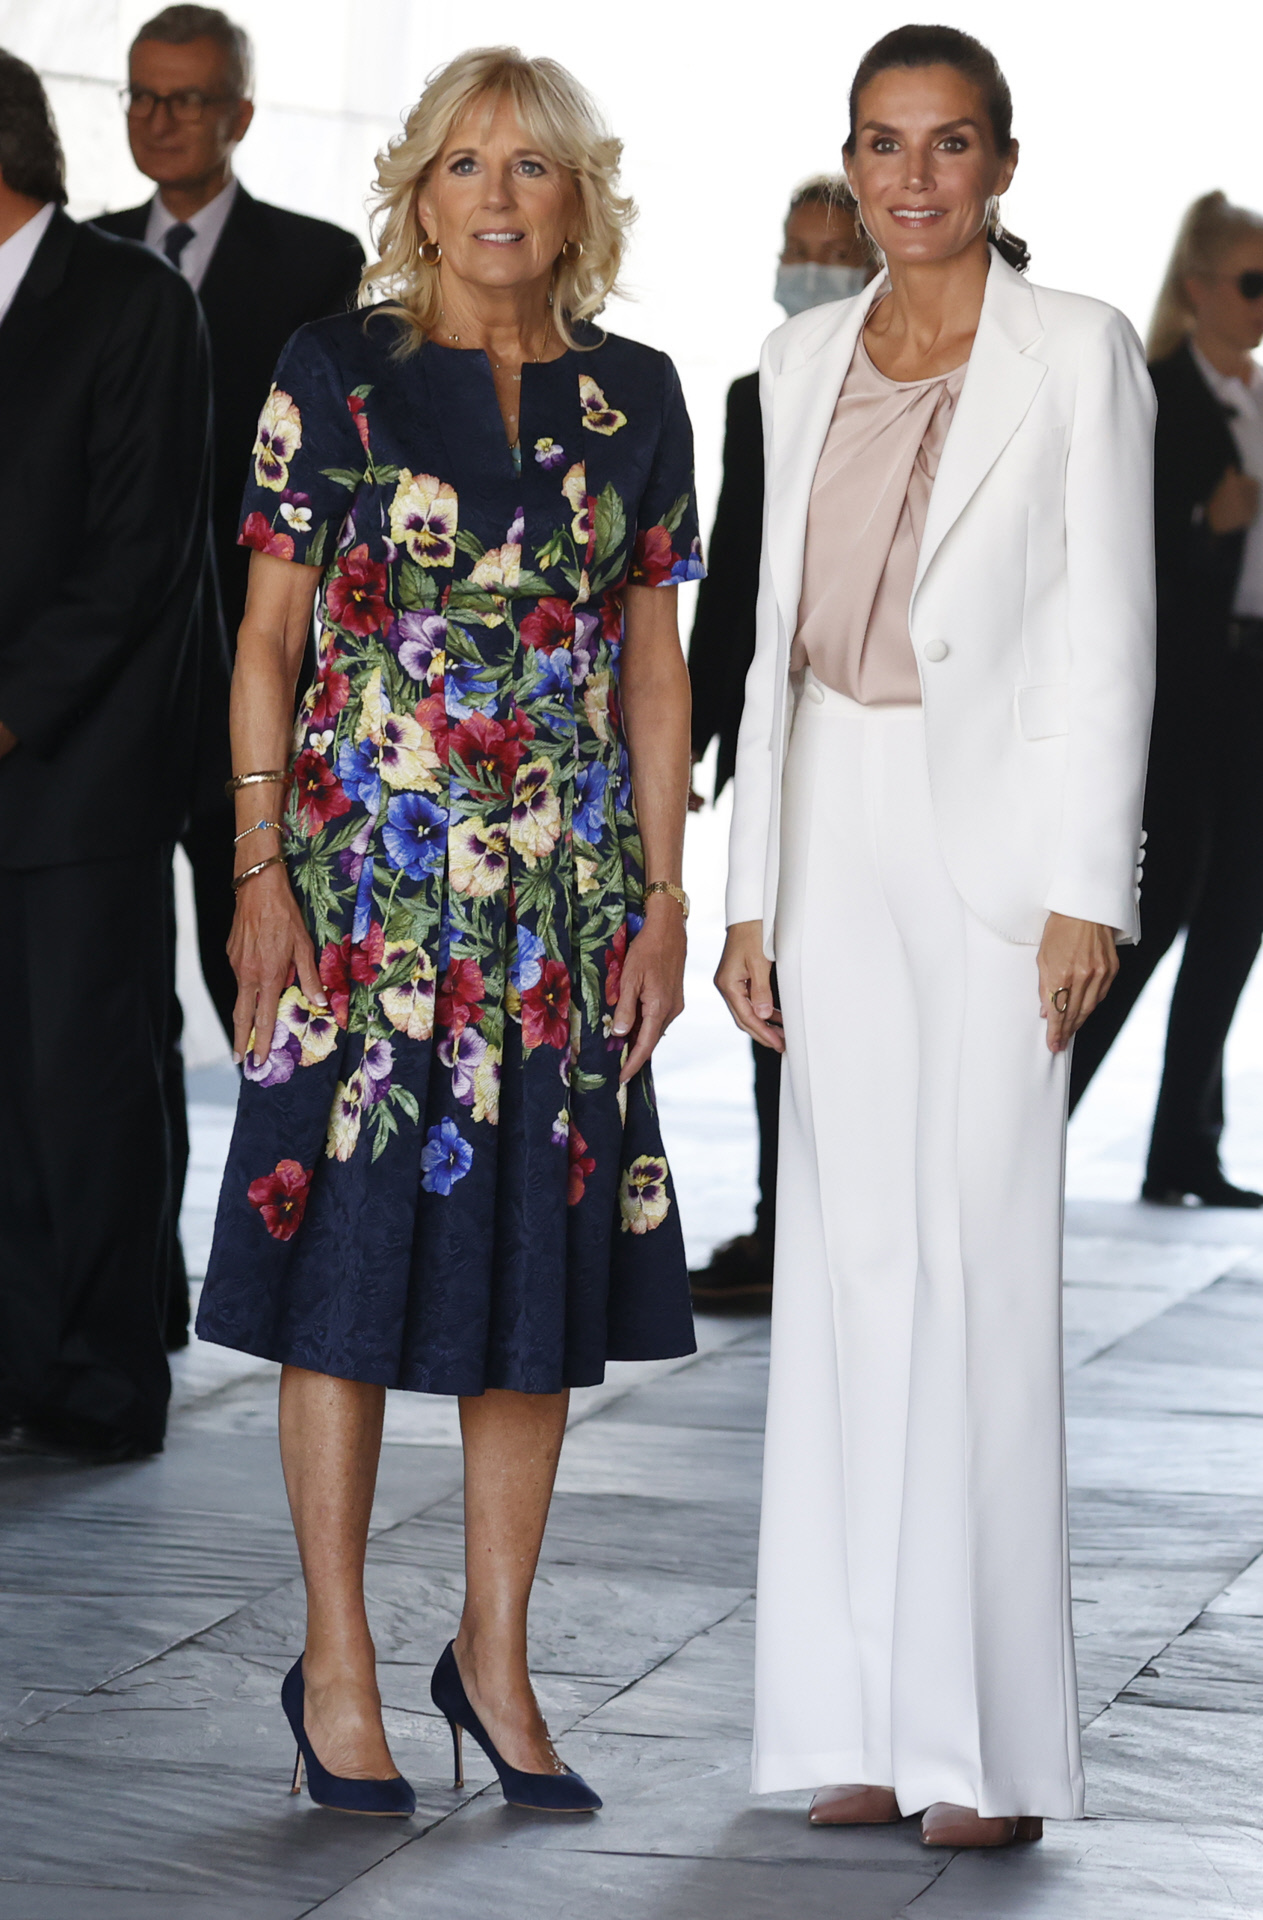 Look completo de Jilla Biden y la Reina.